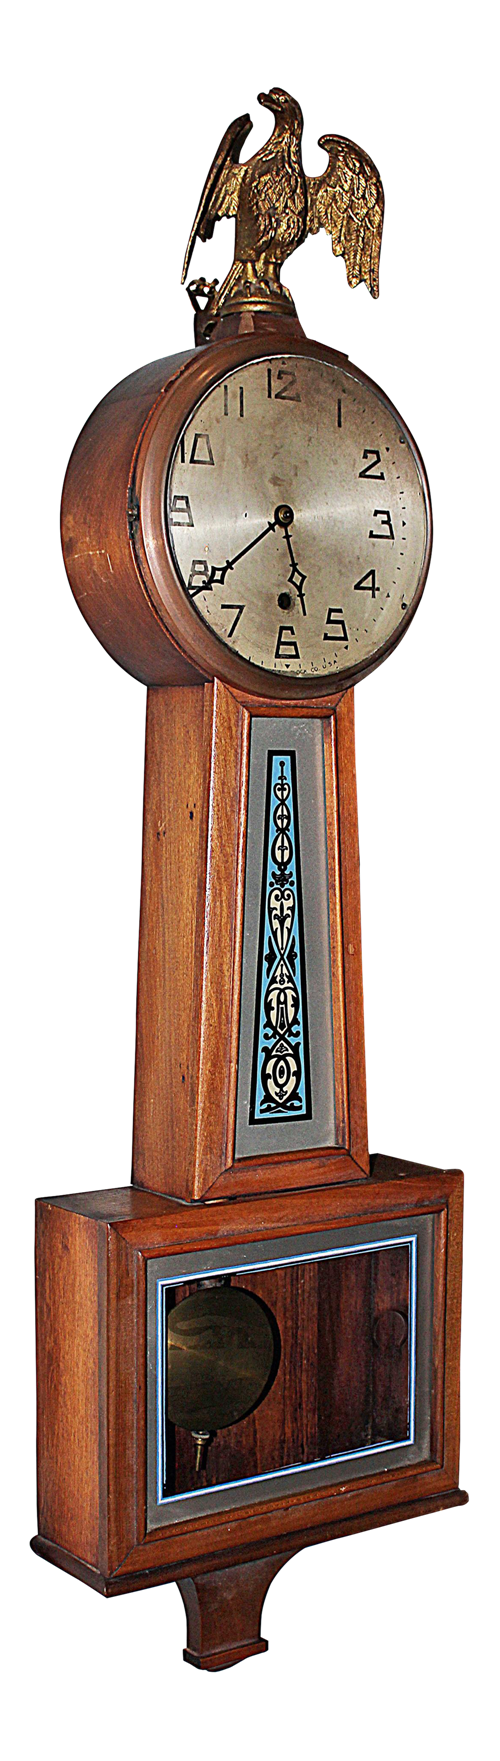 Transparenter Hintergrund der Banjo-Uhr